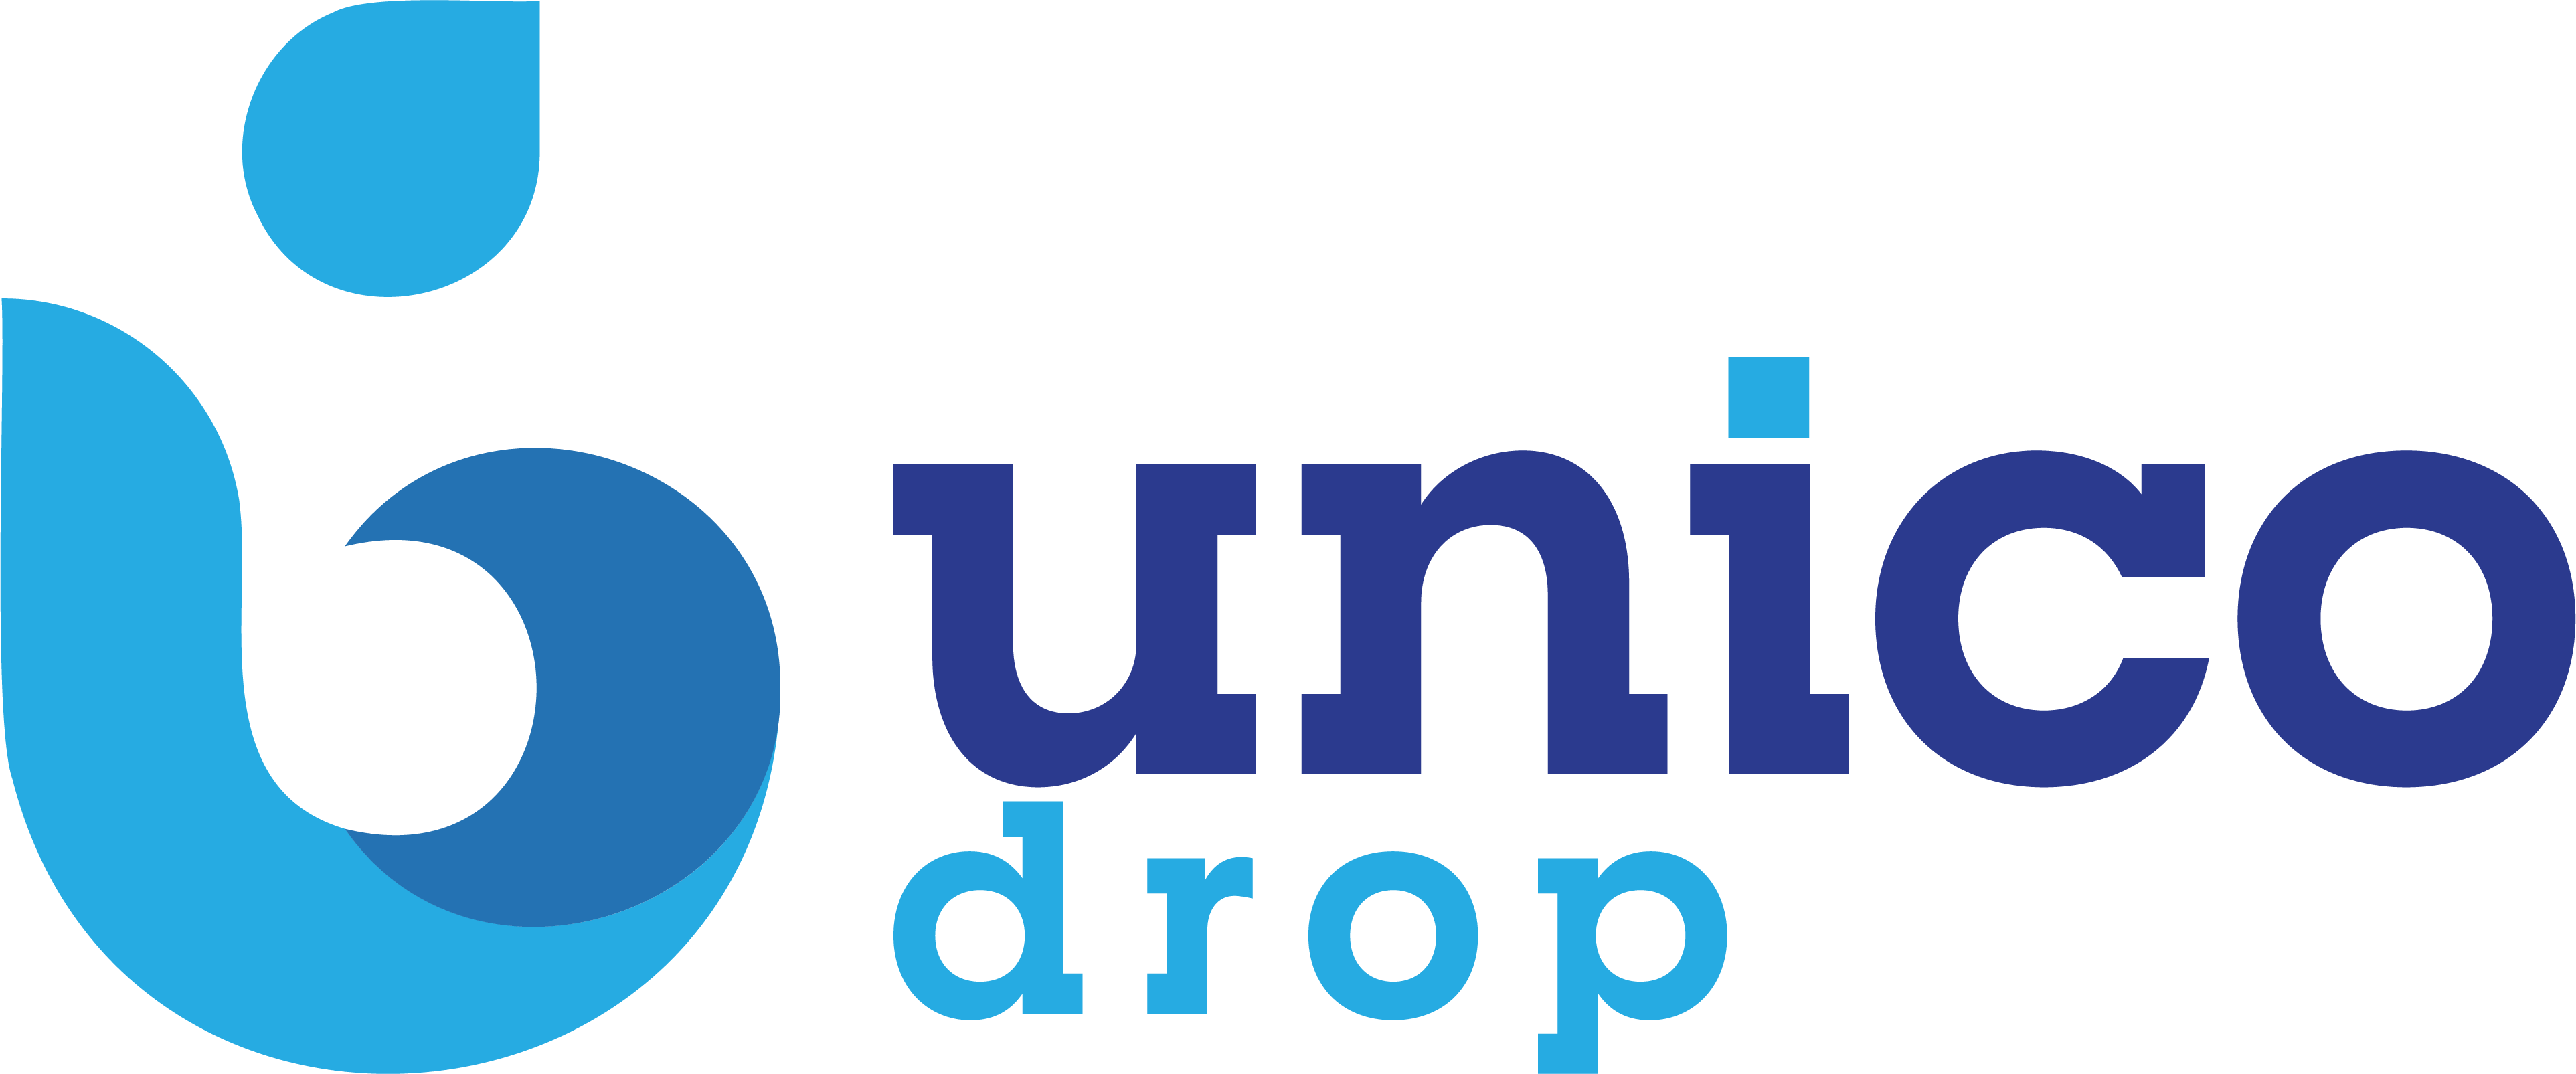 unico-logo-3